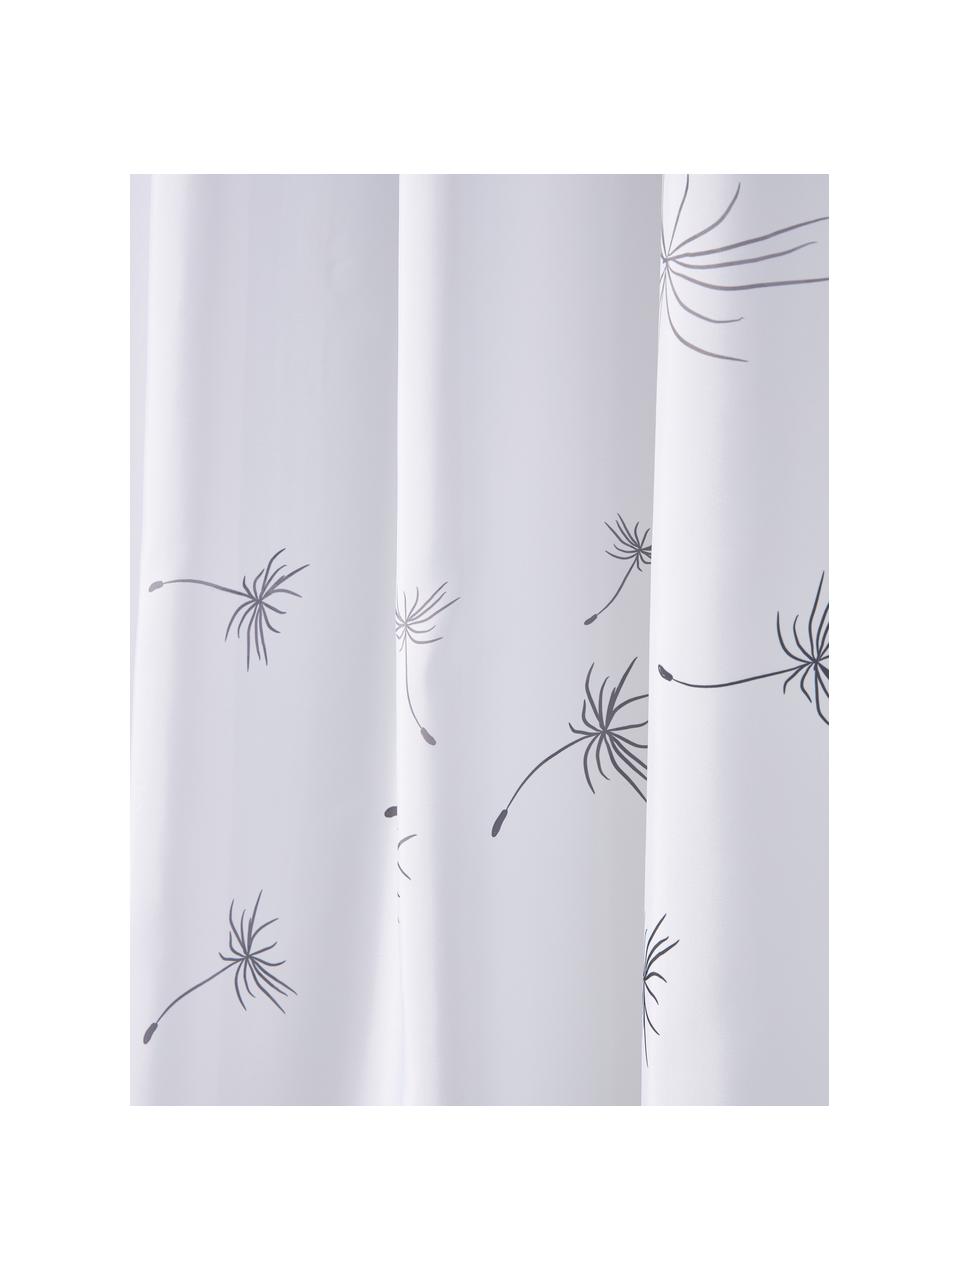 Duschvorhang Flow in Weiss, 100% Polyester, Grau, Weiss, B 180 x L 200 cm